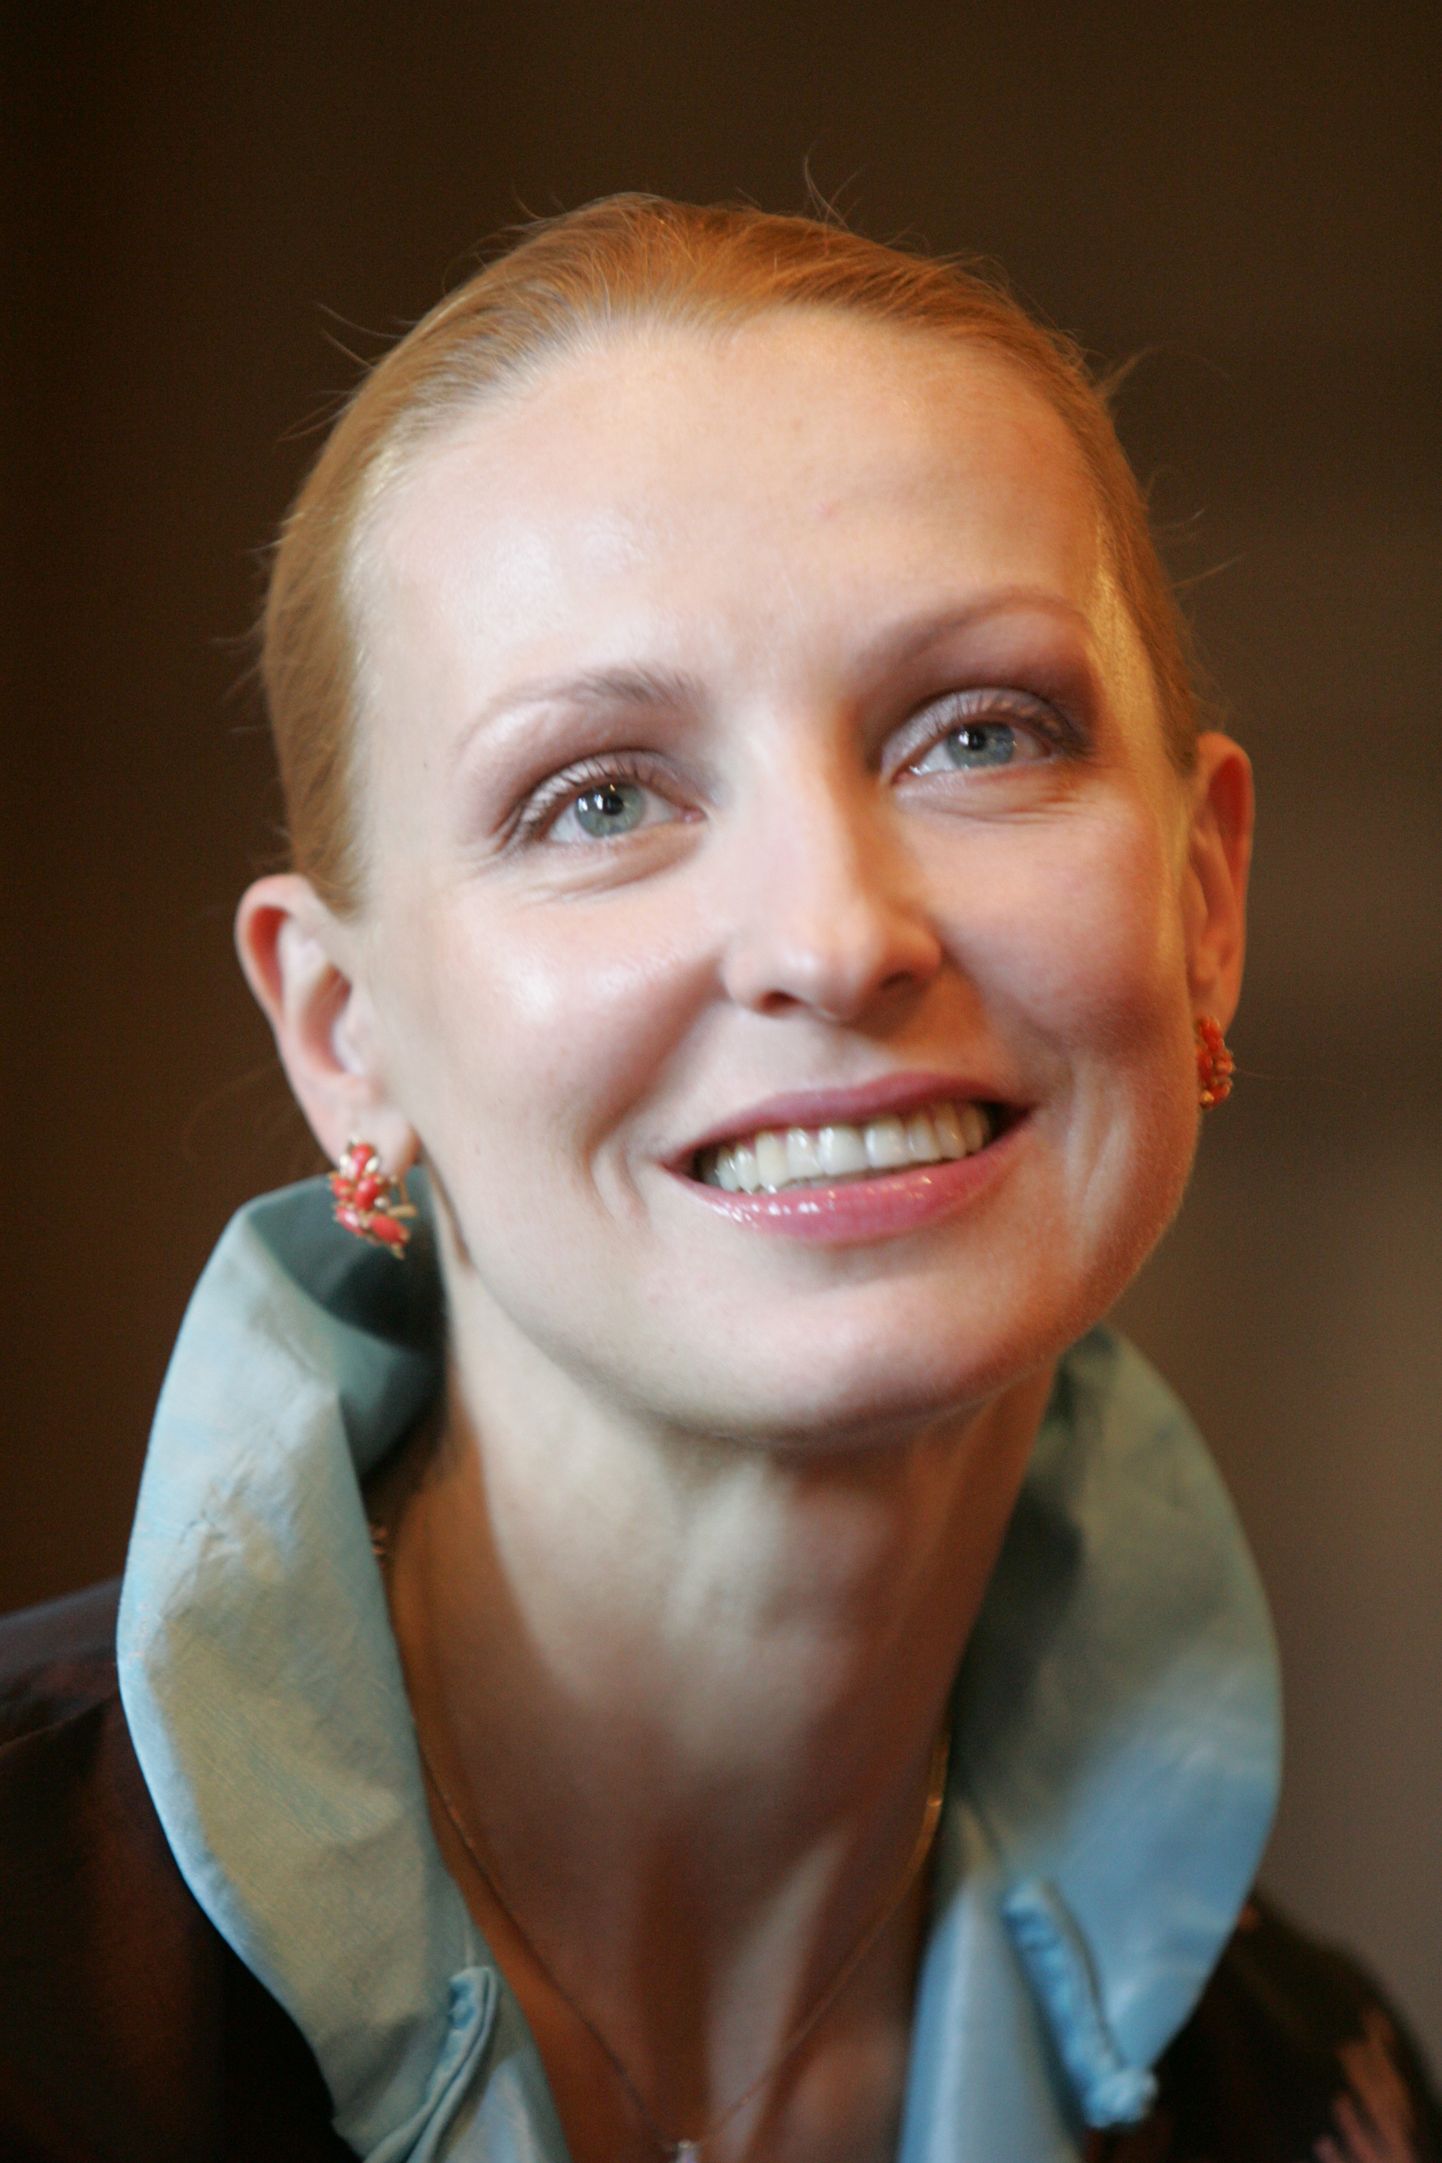 Baletdejotāja Ilze Liepa piedalās preses konferencē, kurā informē izcilā latviešu izcelsmes baletdejotāja Māra Liepas 70.dzimšanas dienai veltīto koncertu Latvijas Nacionālajā operā.